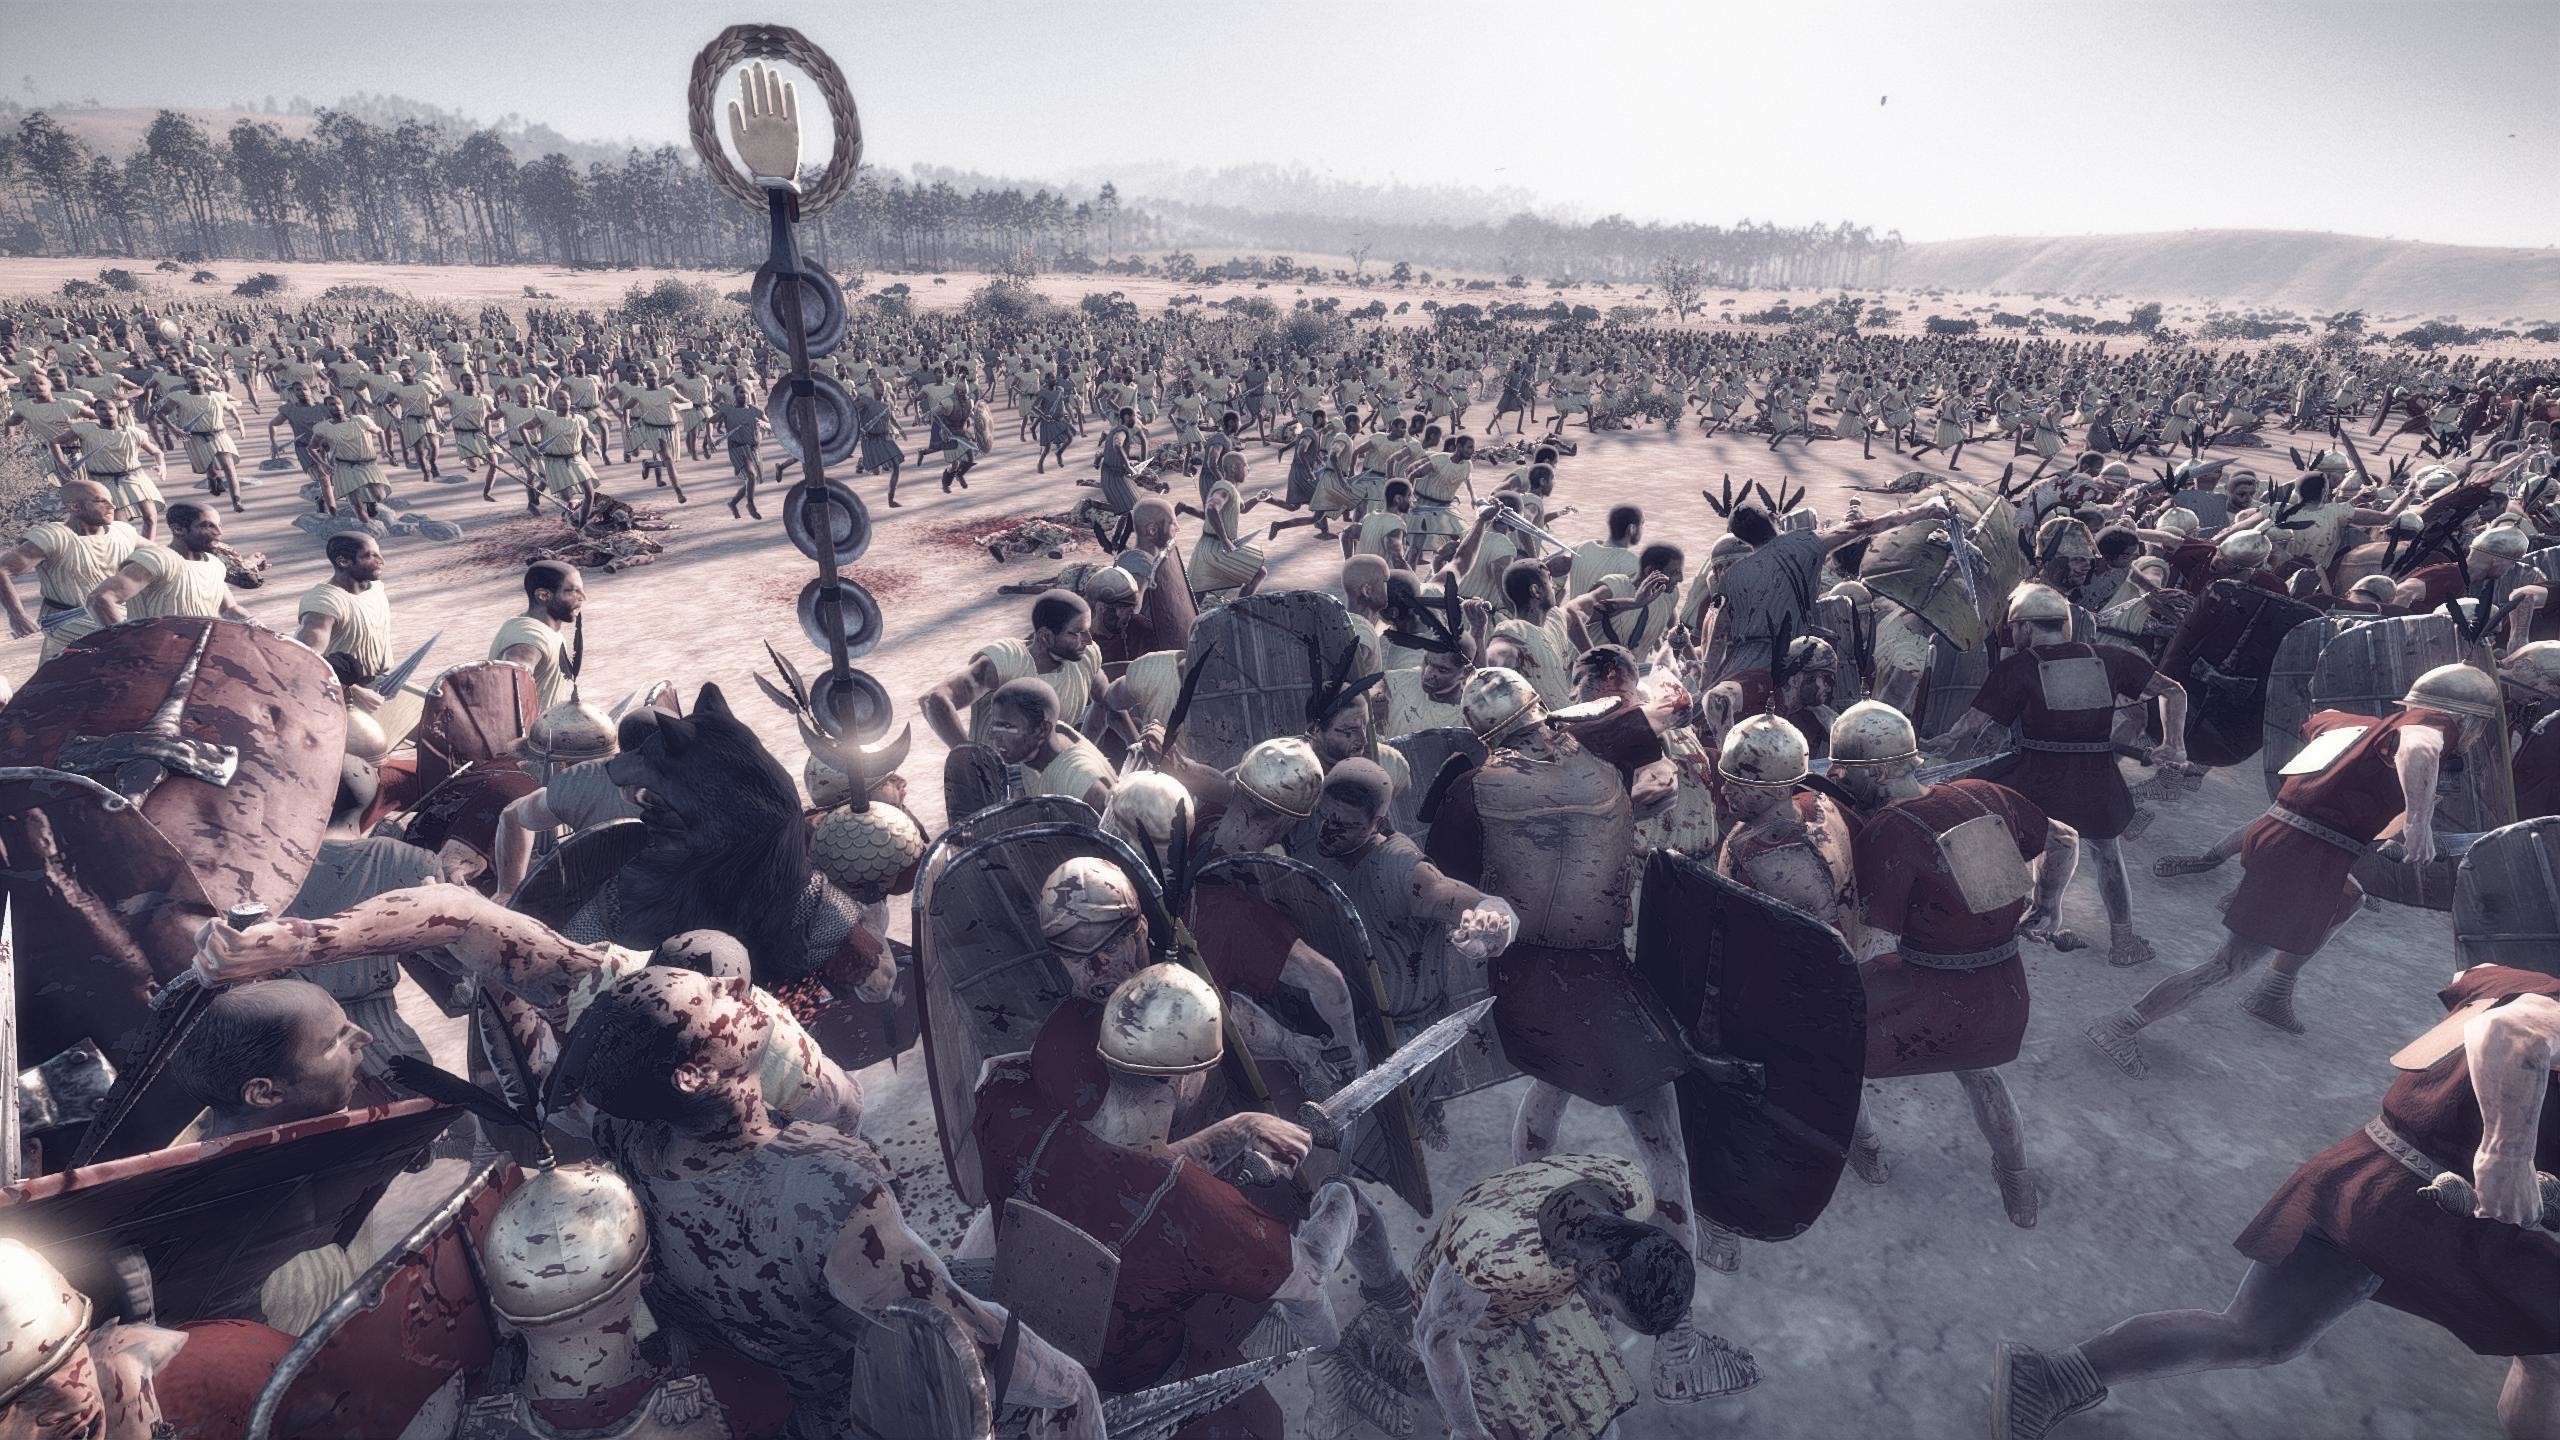 römische legion tapete,menge,menschen,veranstaltung,fotografie,rebellion